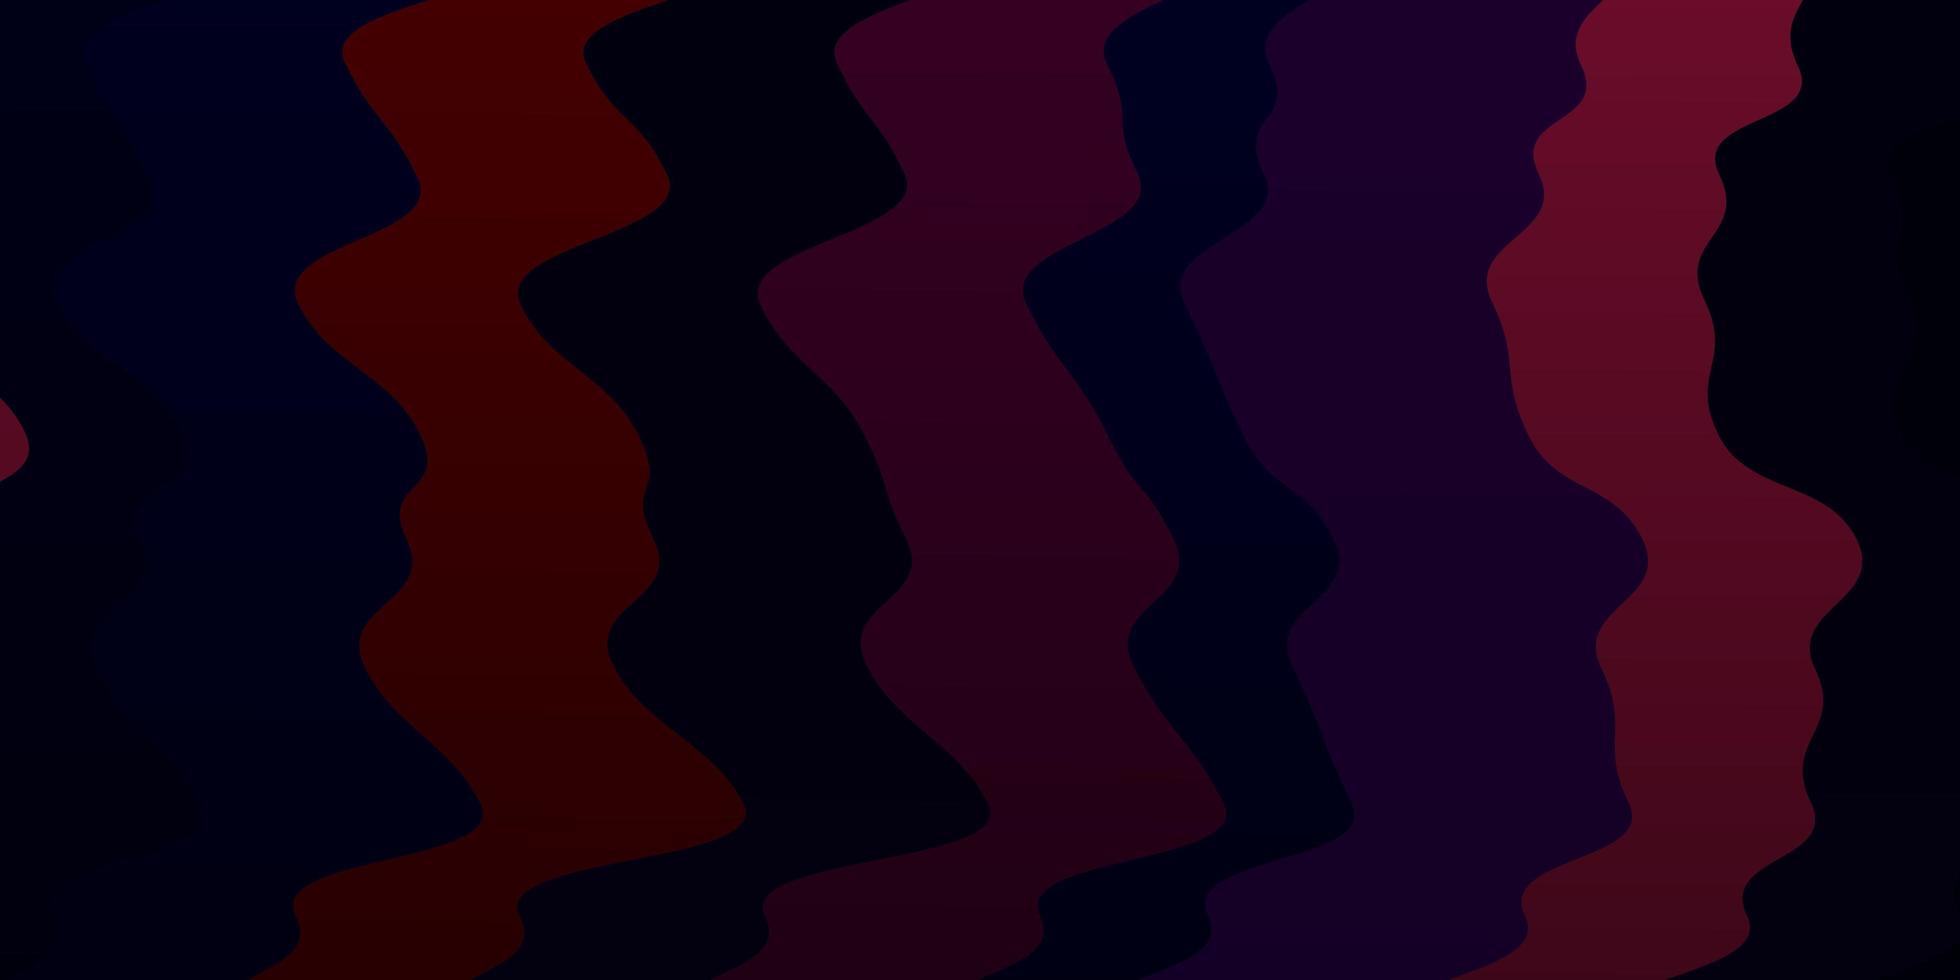 padrão de vetor roxo escuro com ilustração colorida de linhas irônicas que consiste em um padrão de curvas para comerciais de anúncios